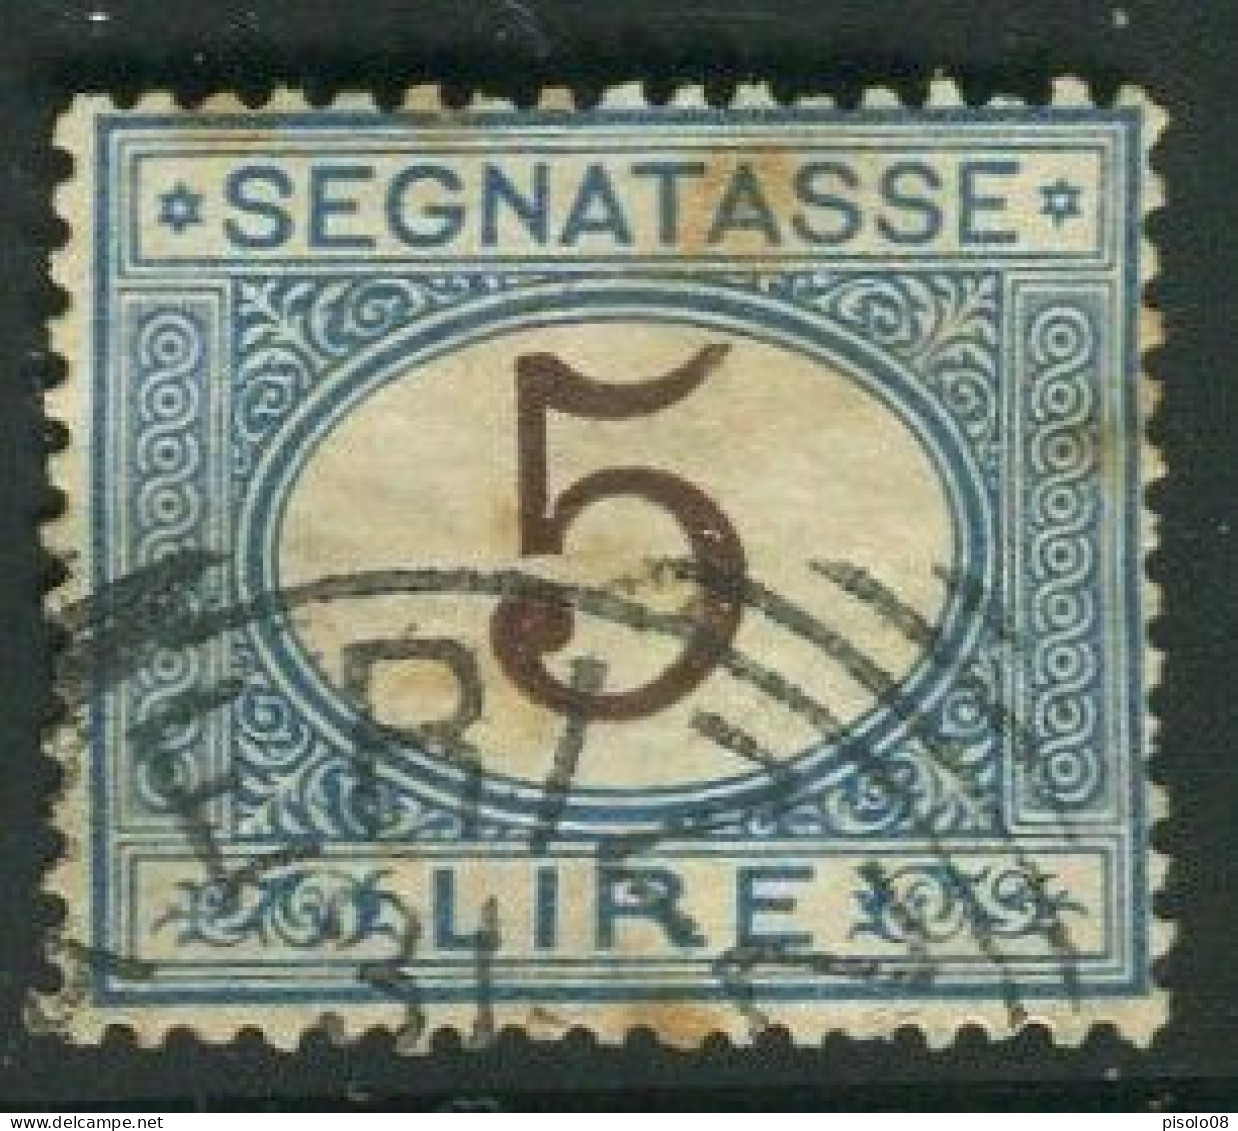 REGNO 1870-94 SEGNATASSE 5 LIRE USATO - Strafport